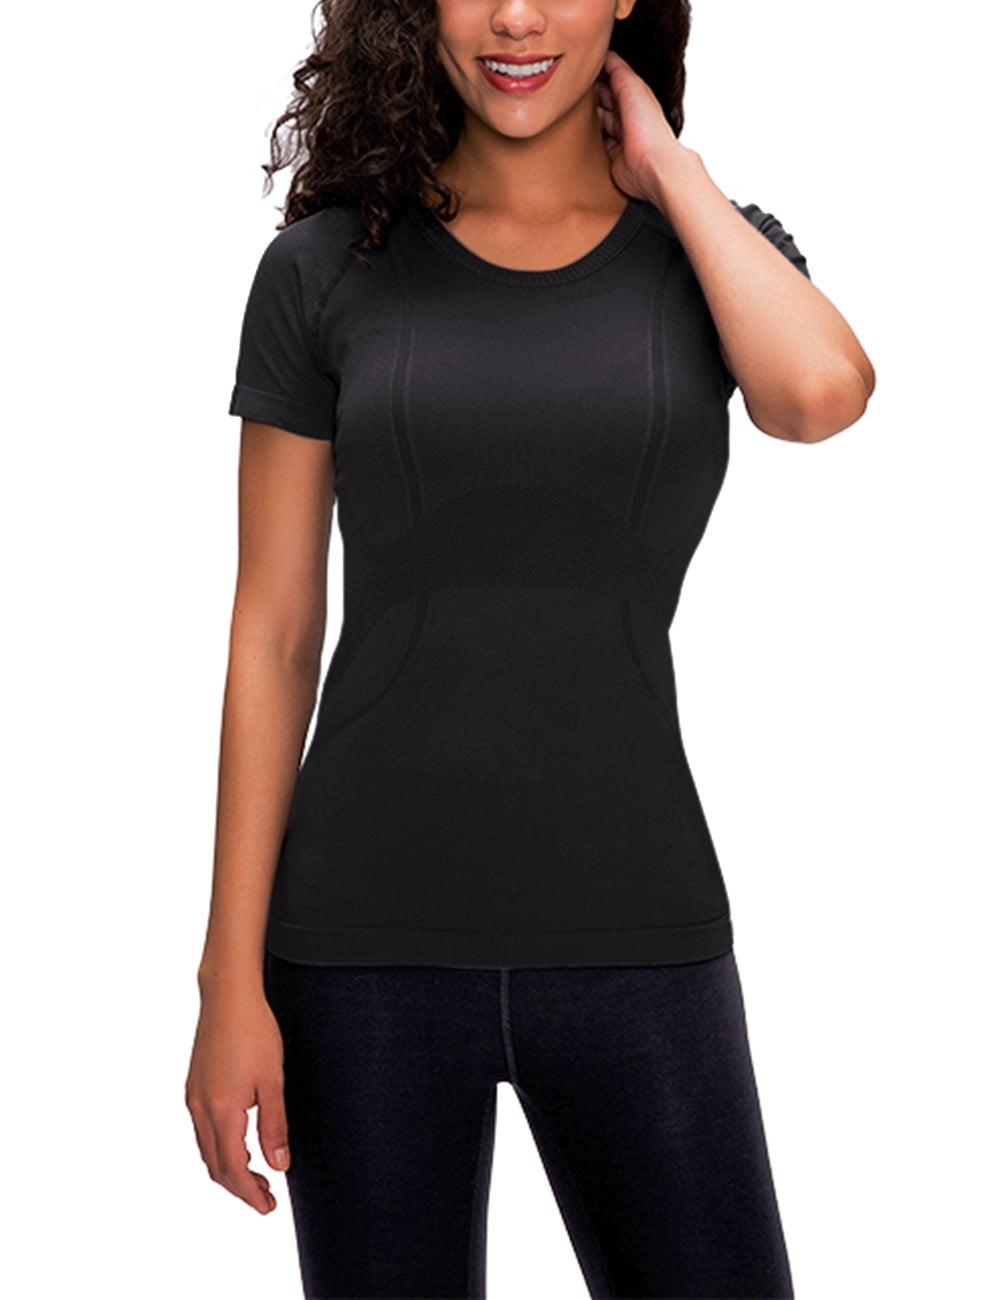 ALO Yoga Athlet Black Short Sleeve Net Jersey Women Sz XS Fishnet Top Shirt  Tee